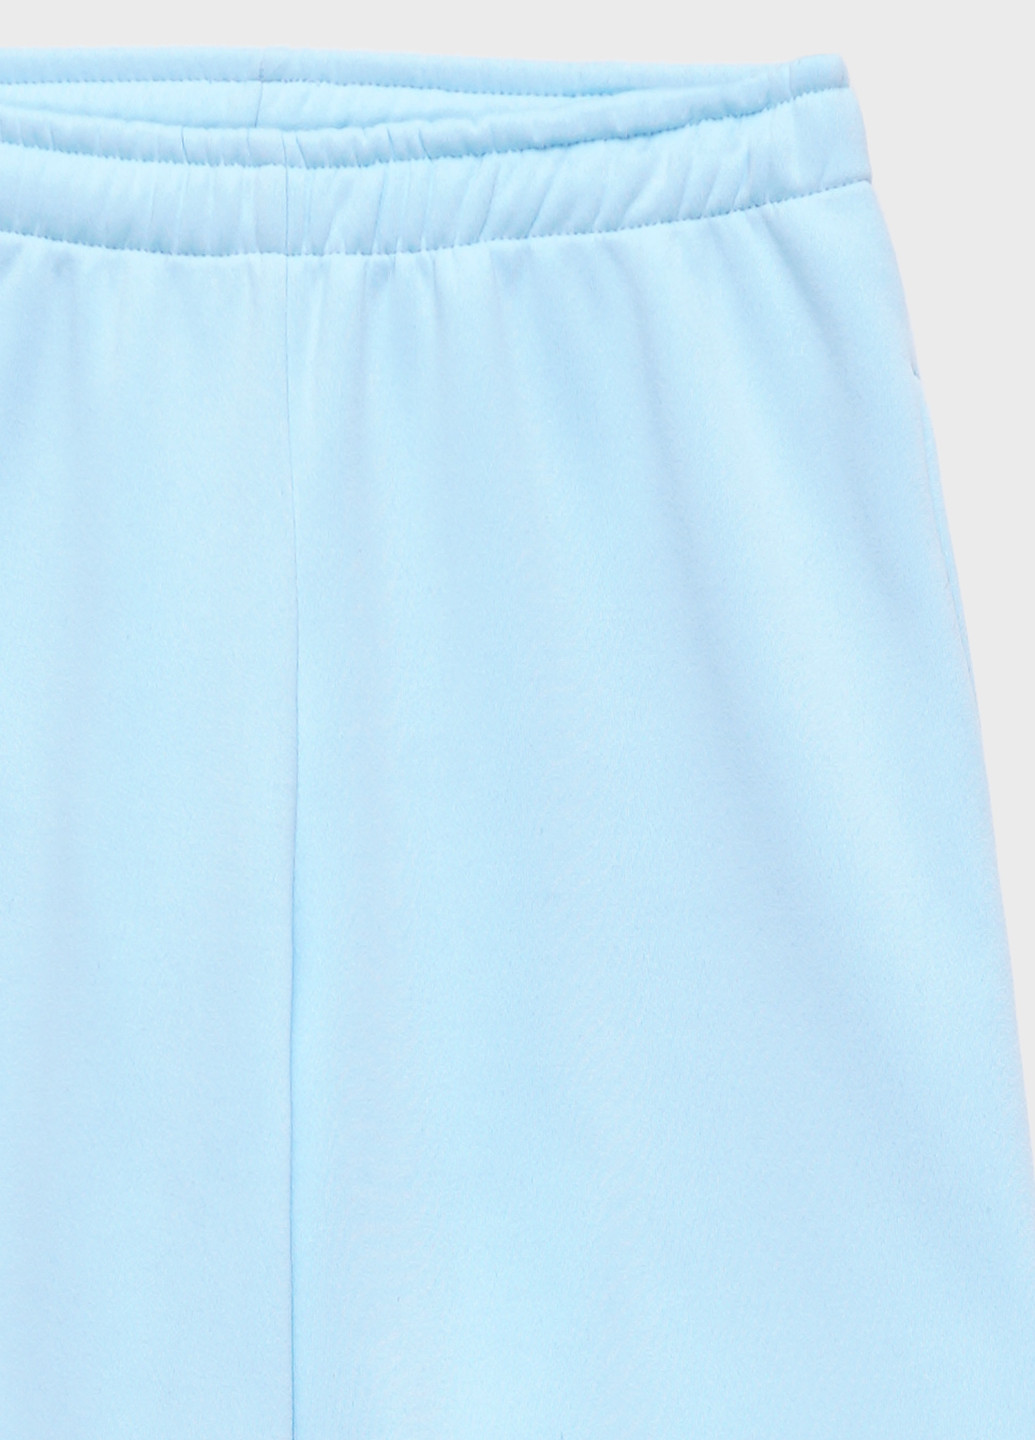 Спортиві брюки-джогери жіночі на флісі KASTA design джогери однотонні блакитні спортивні поліестер, трикотаж, фліс